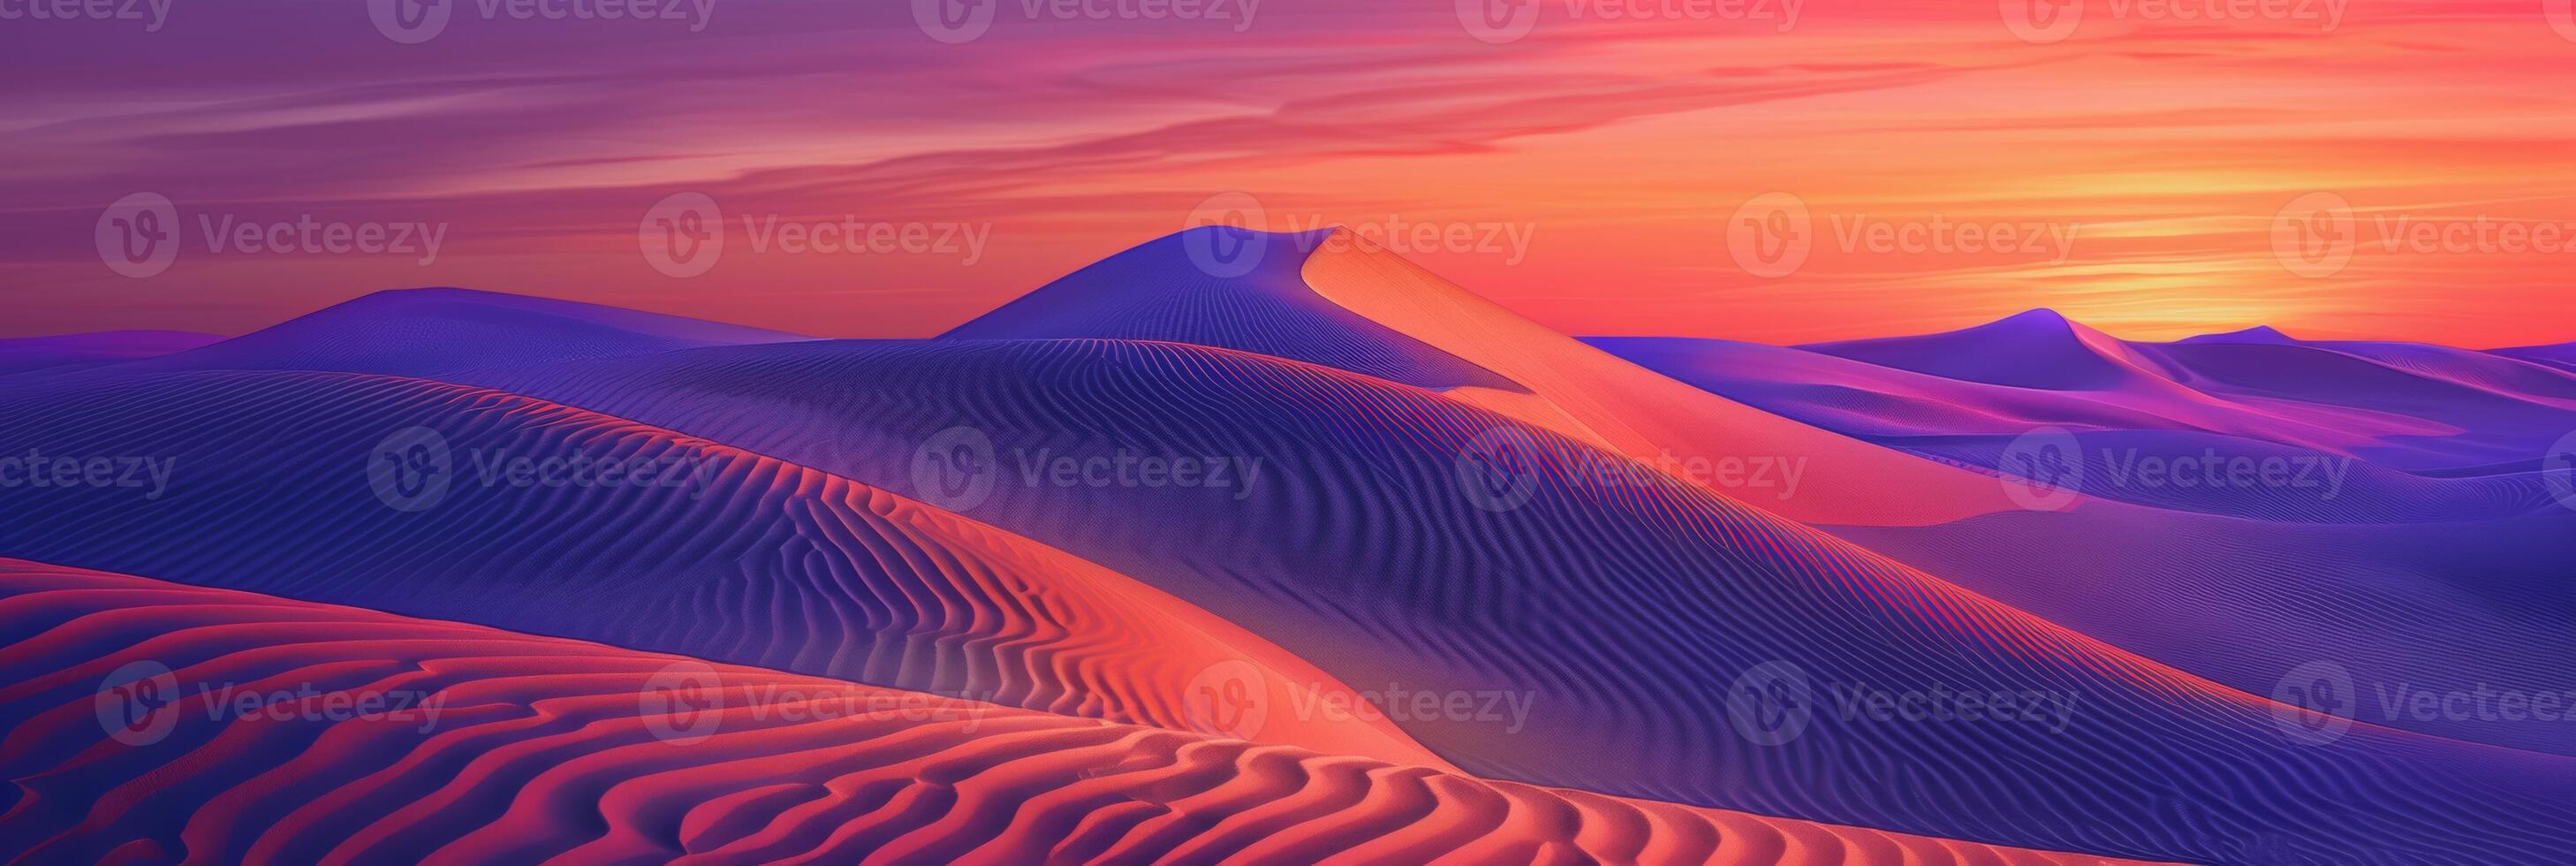 soluppgång målarfärger ovanlig fraktal mönster på böljande öken- sand sanddyner med en vibrerande orange och lila lutning himmel som bakgrund foto